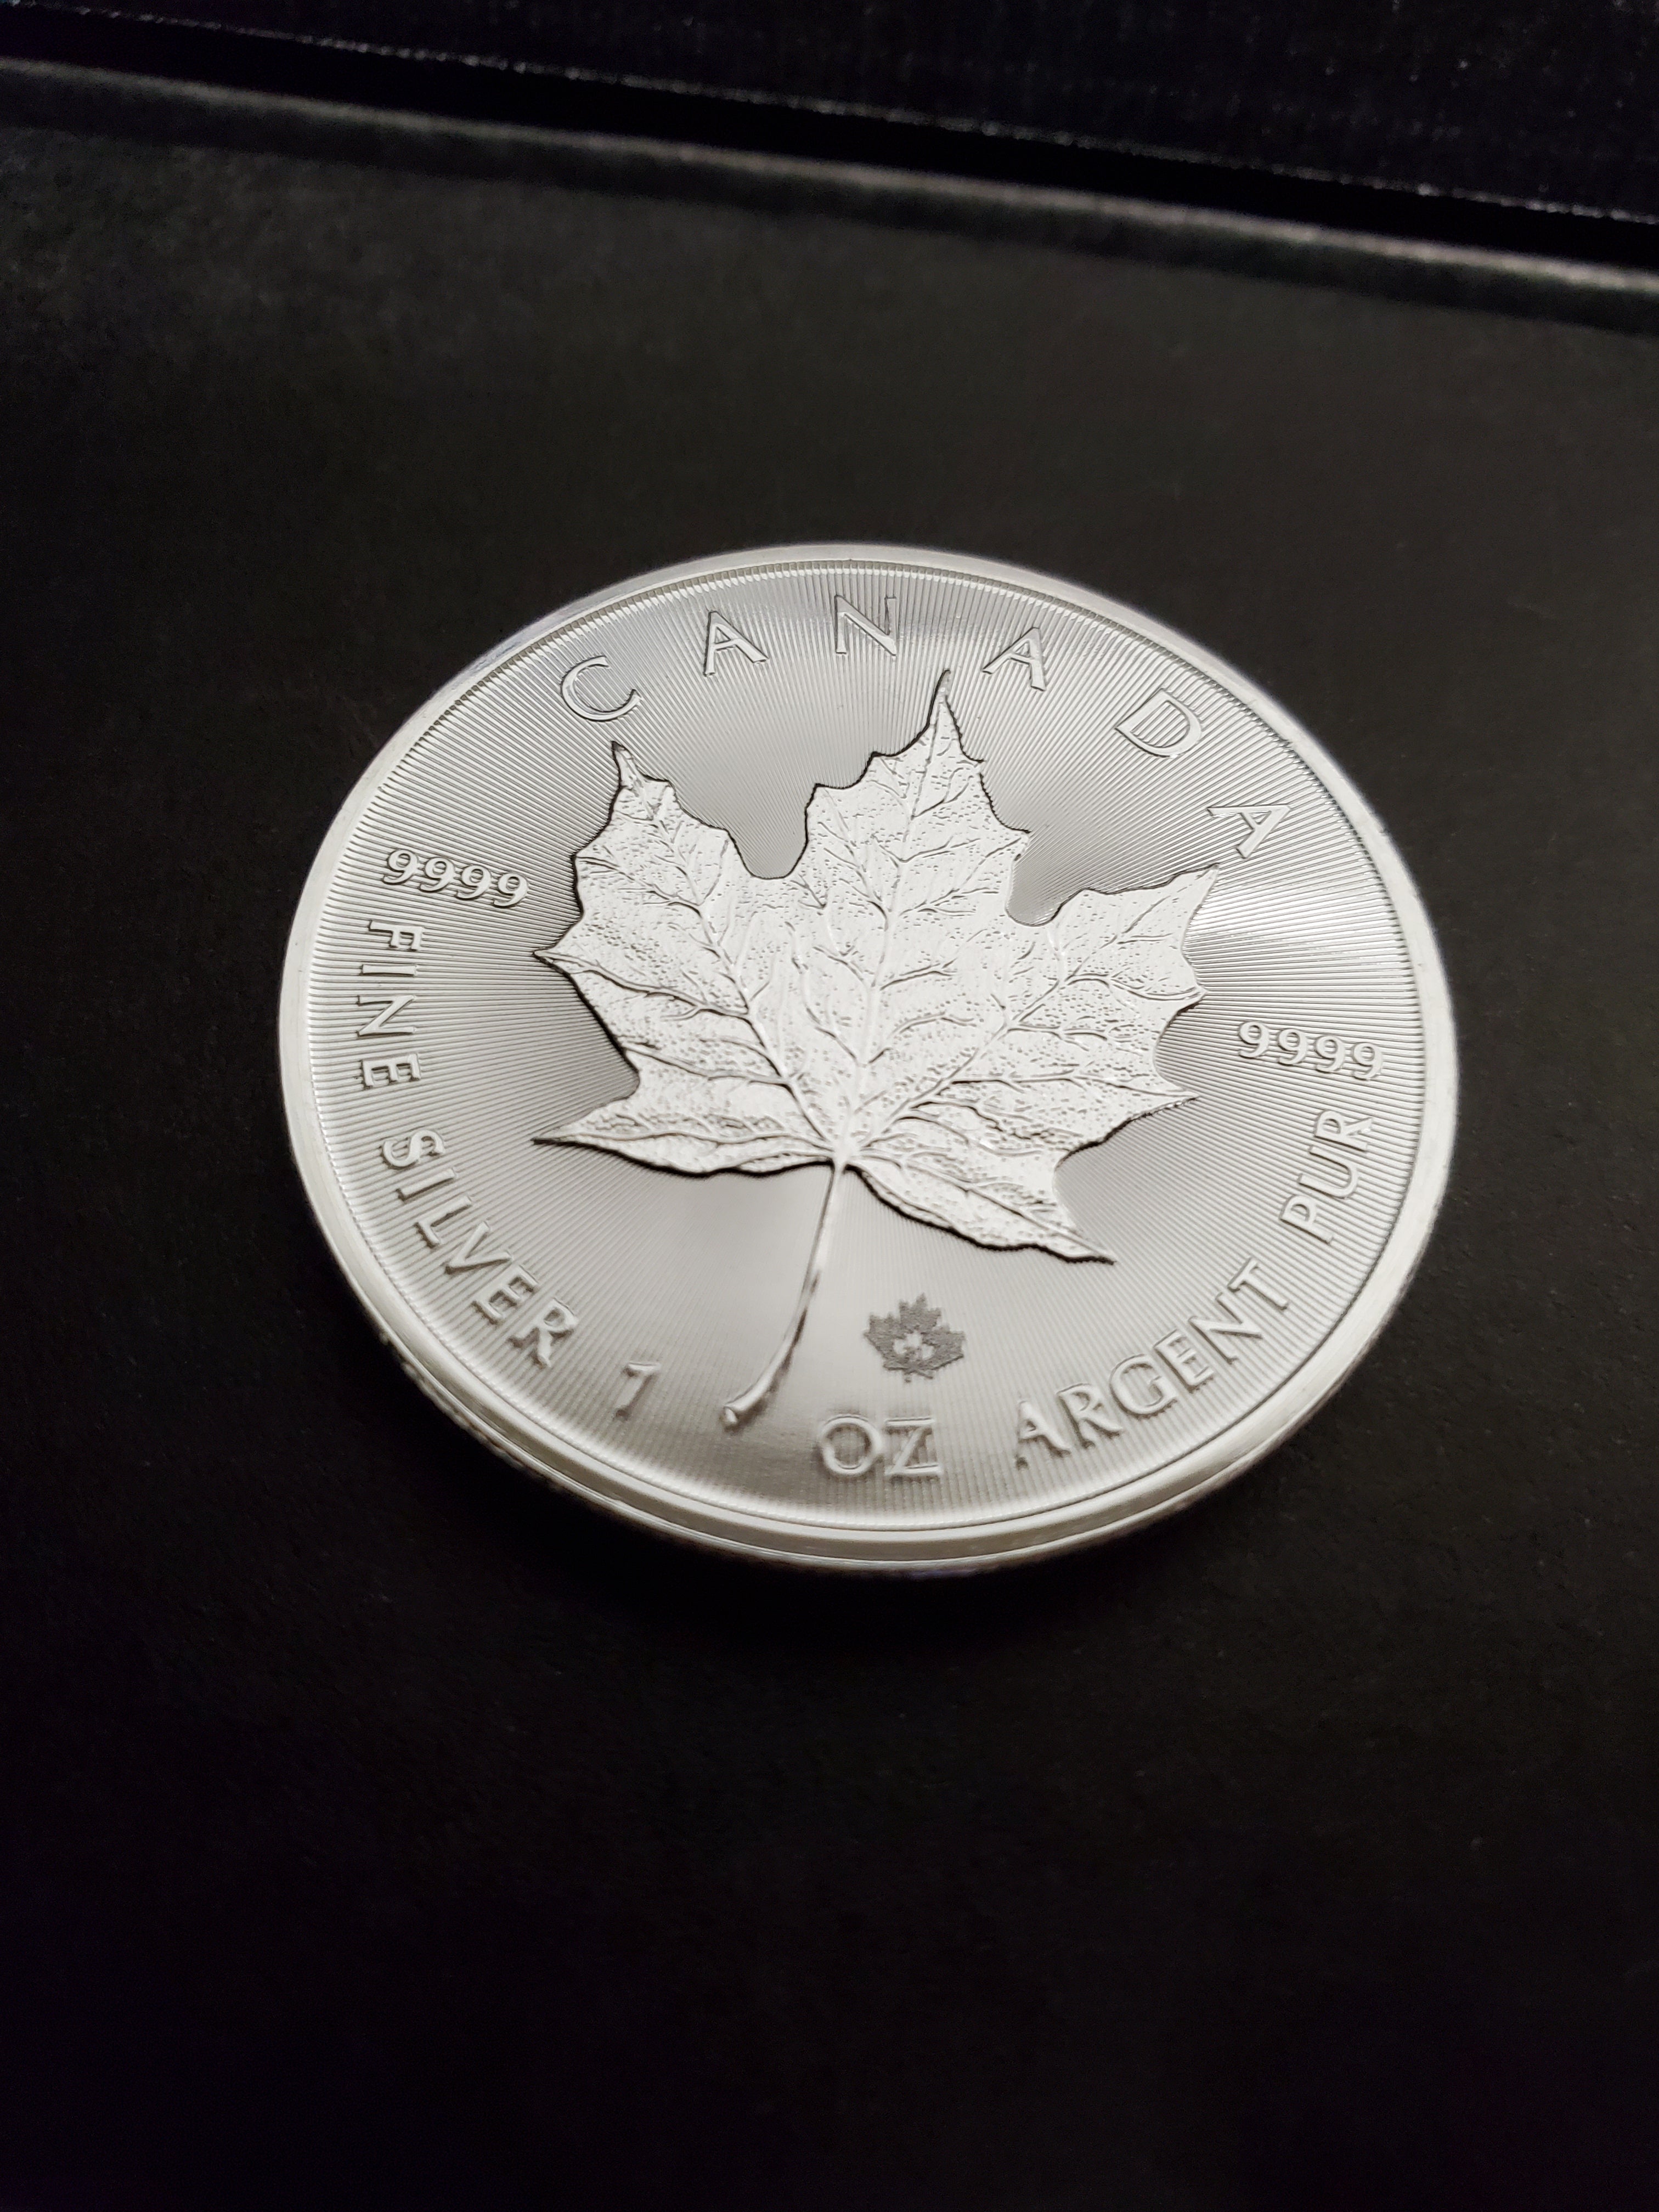 1 oz Silver Canadian Maple Leaf